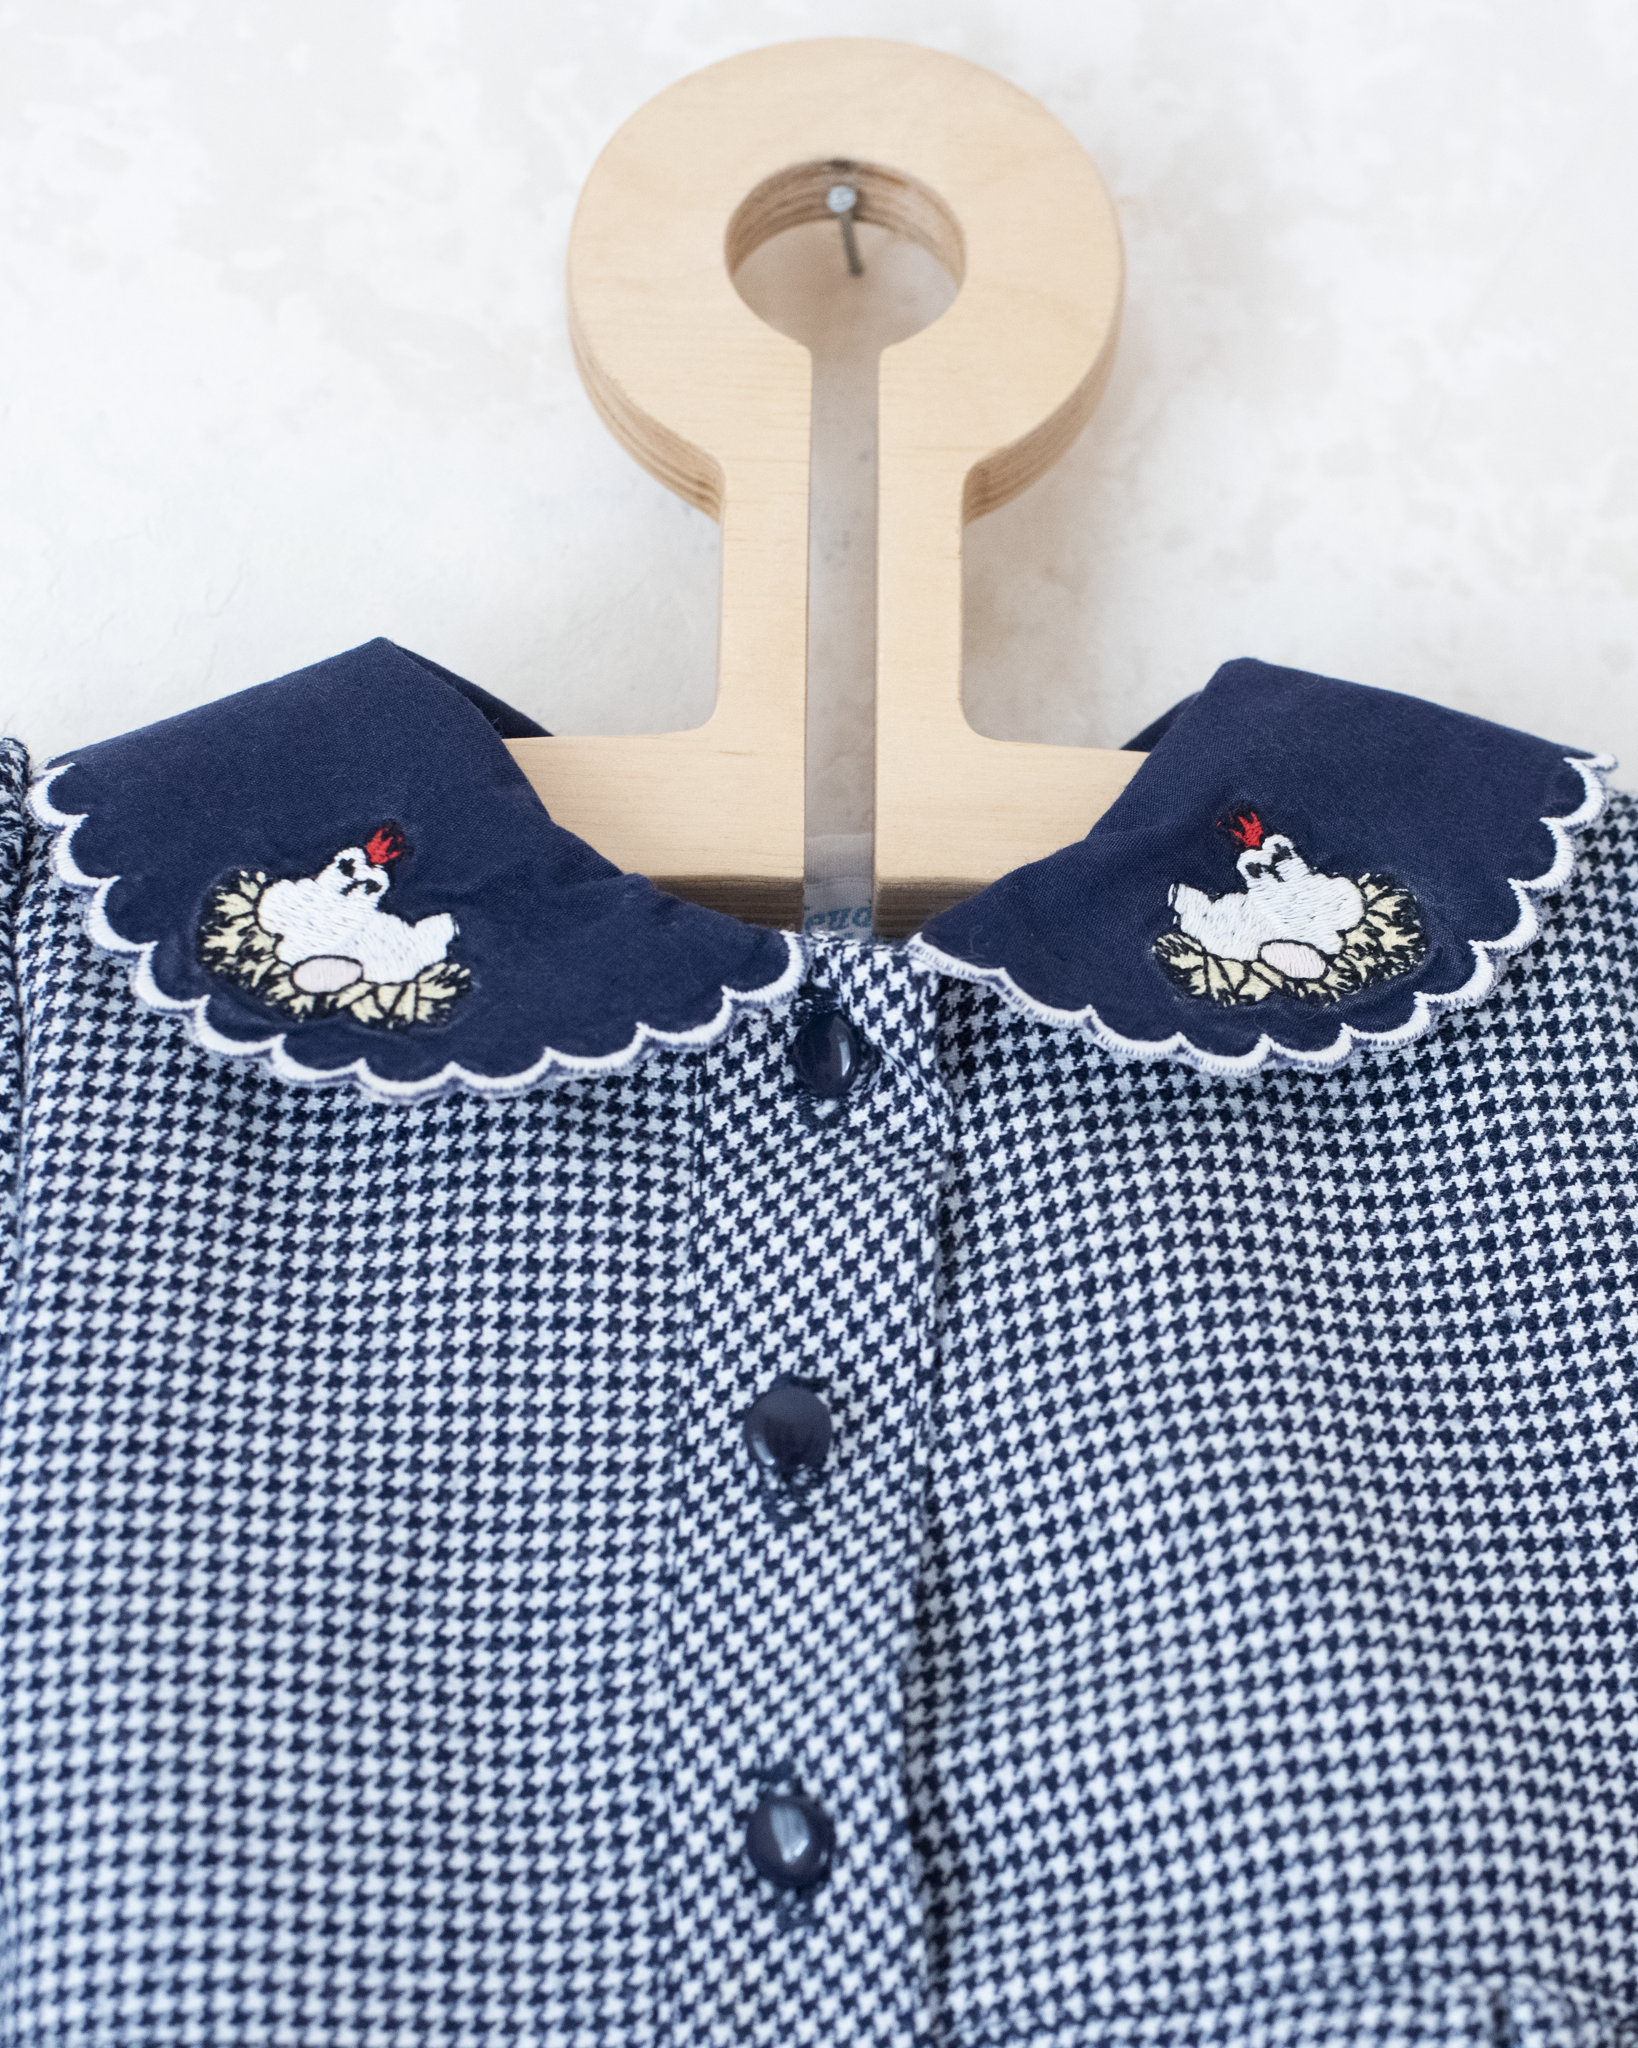 שמלת פפיטה ארוכה עם תרנגולות רקומות על הצווארון | 12-18 חודשים